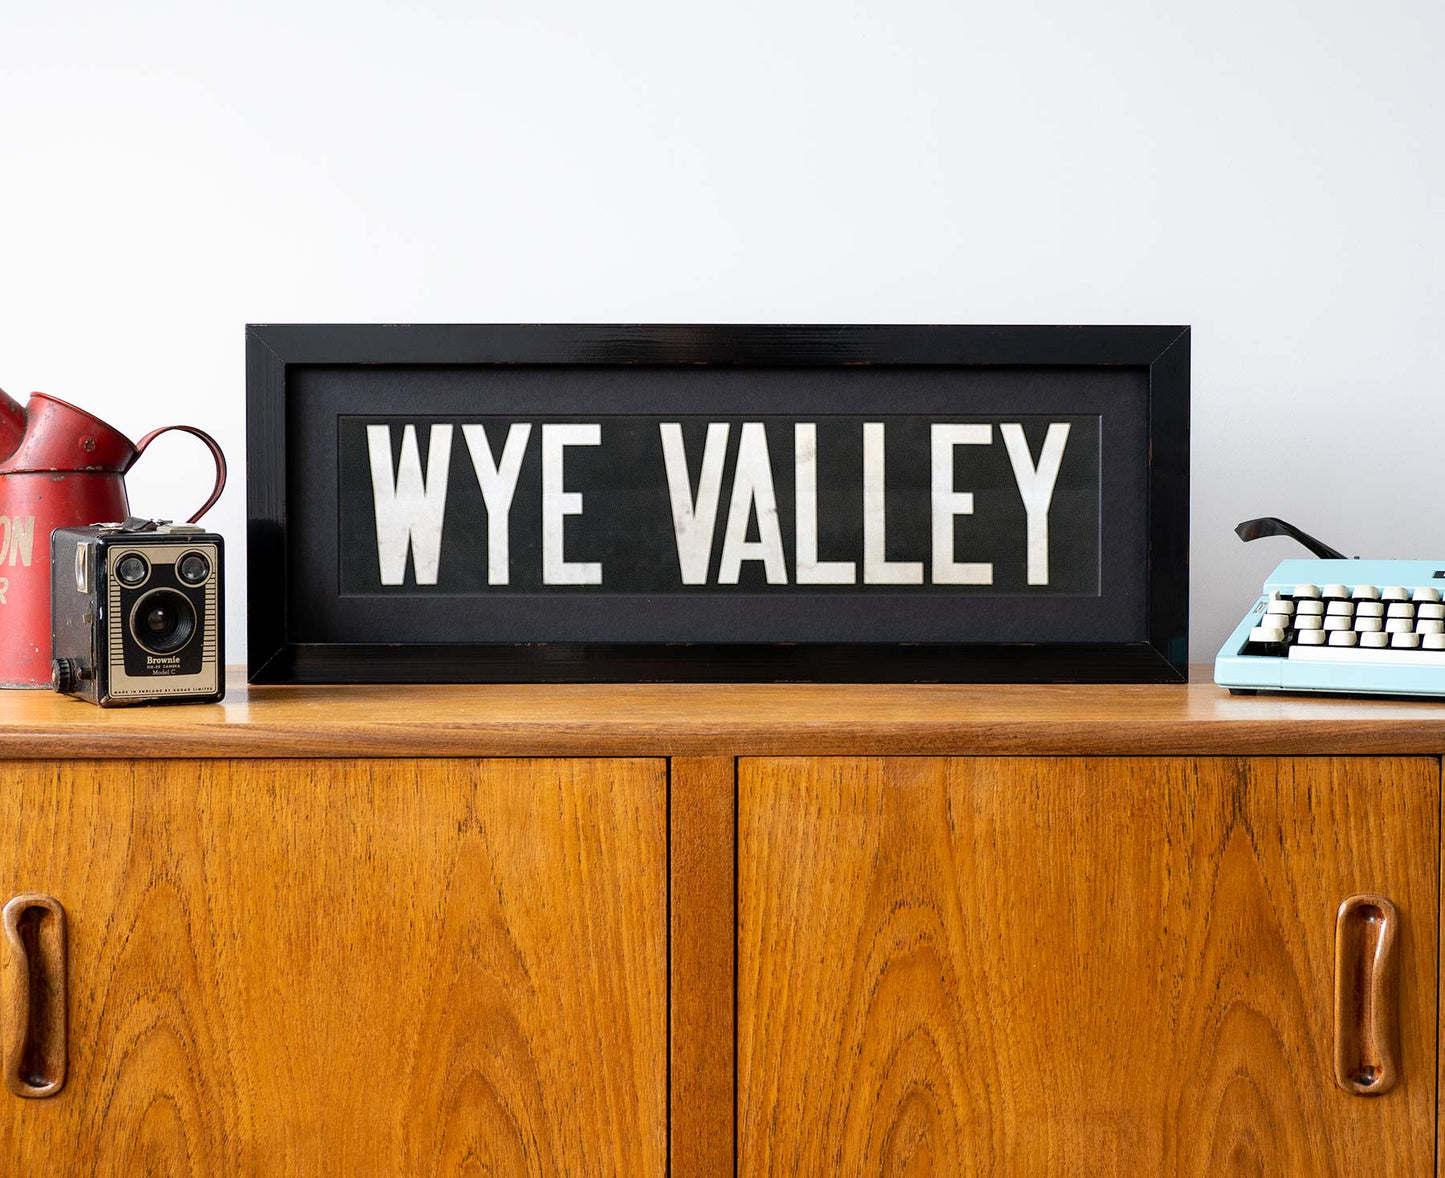 Wye Valley 1960s framed bus blind